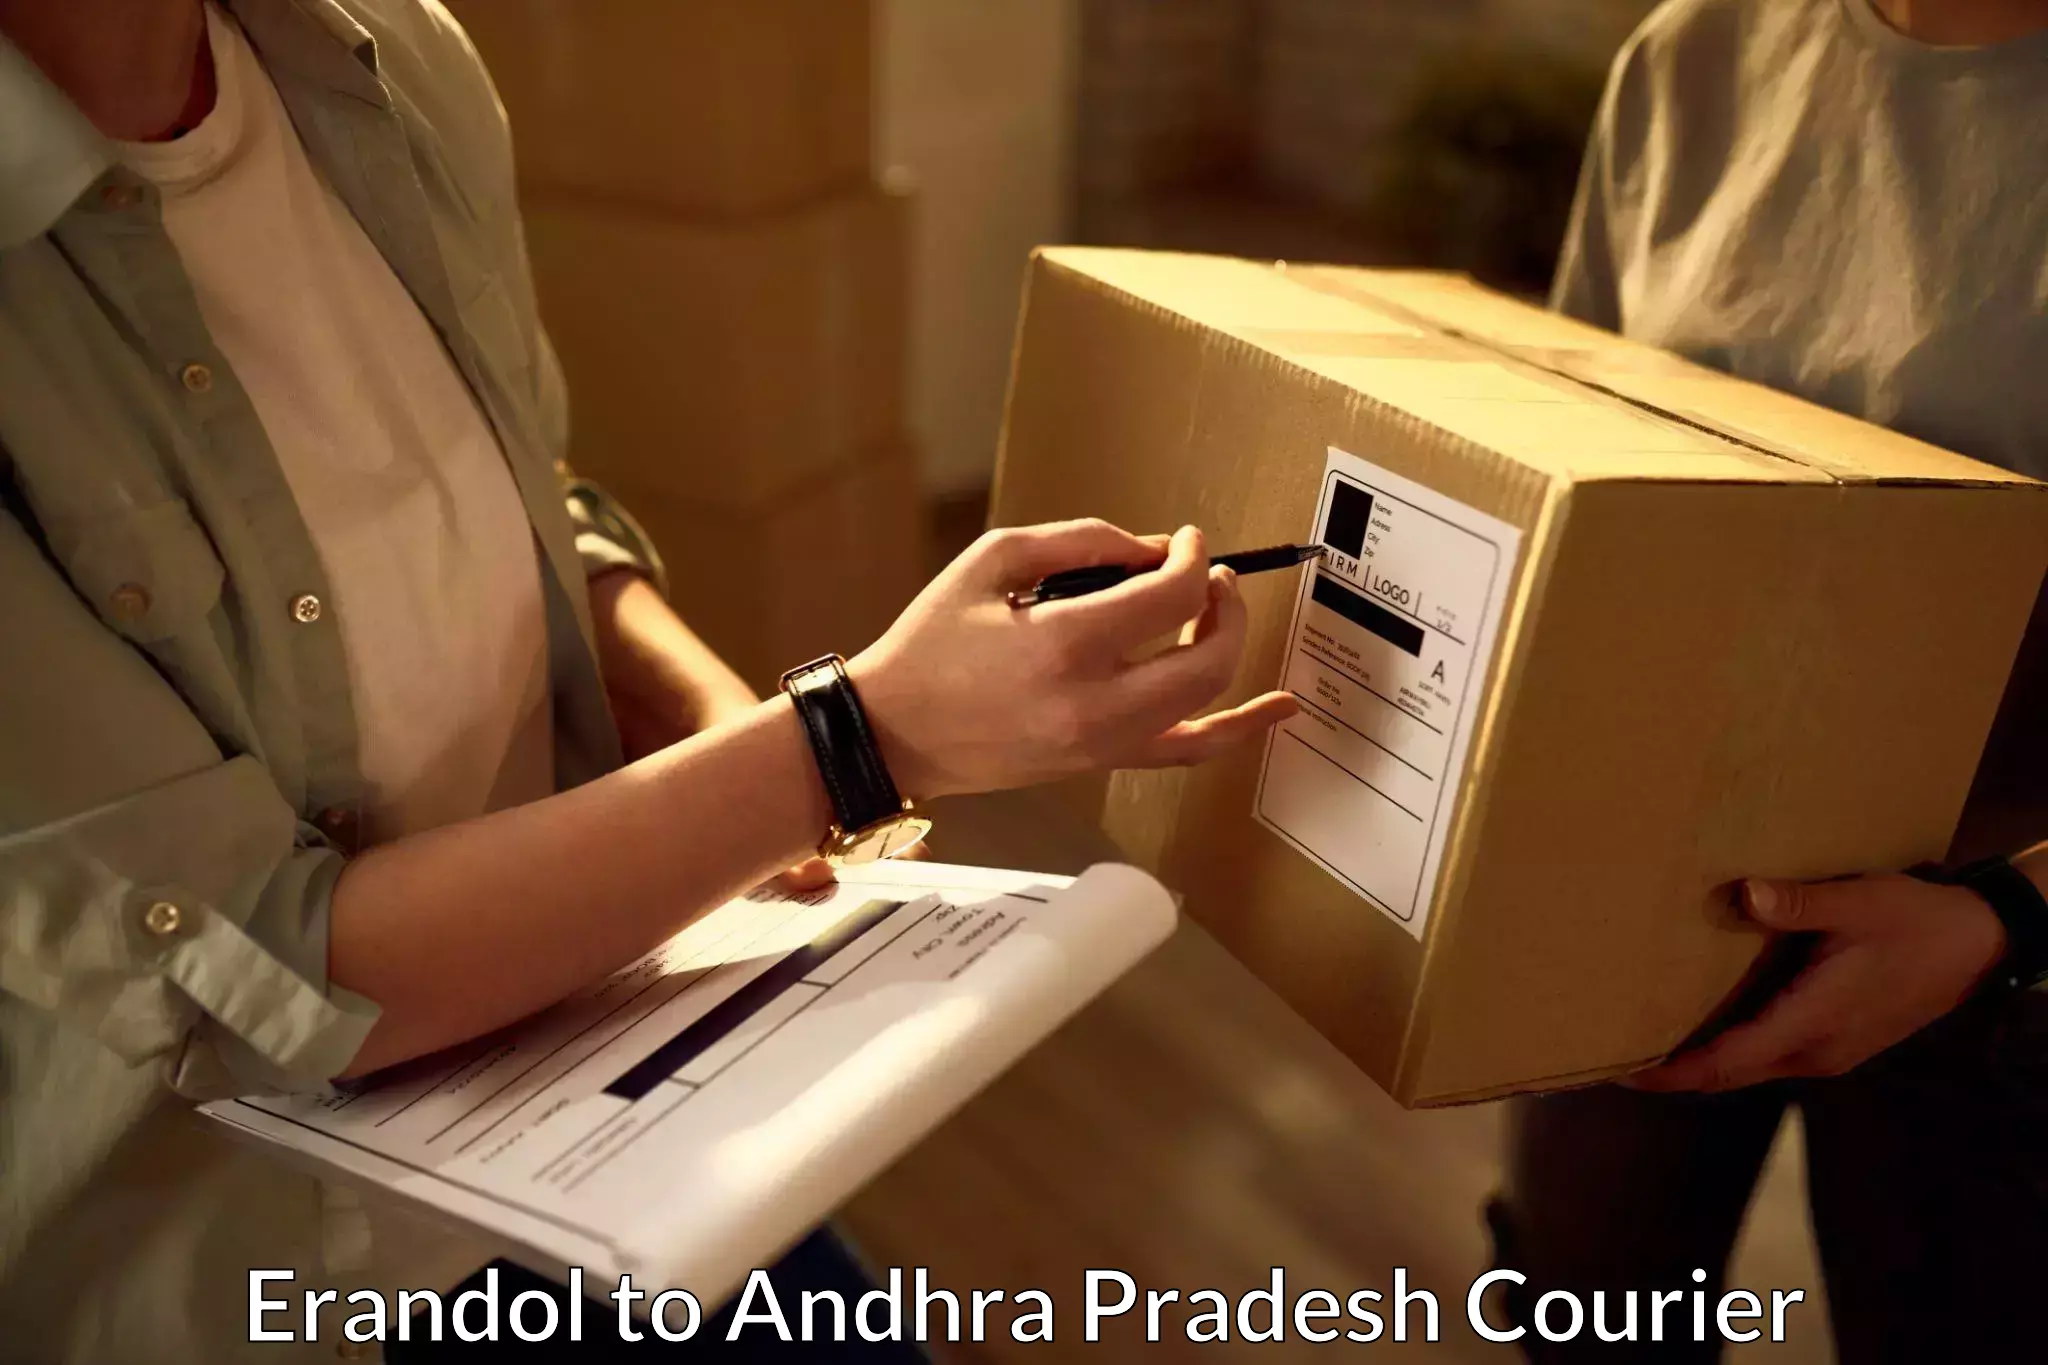 Reliable delivery network Erandol to Andhra Pradesh